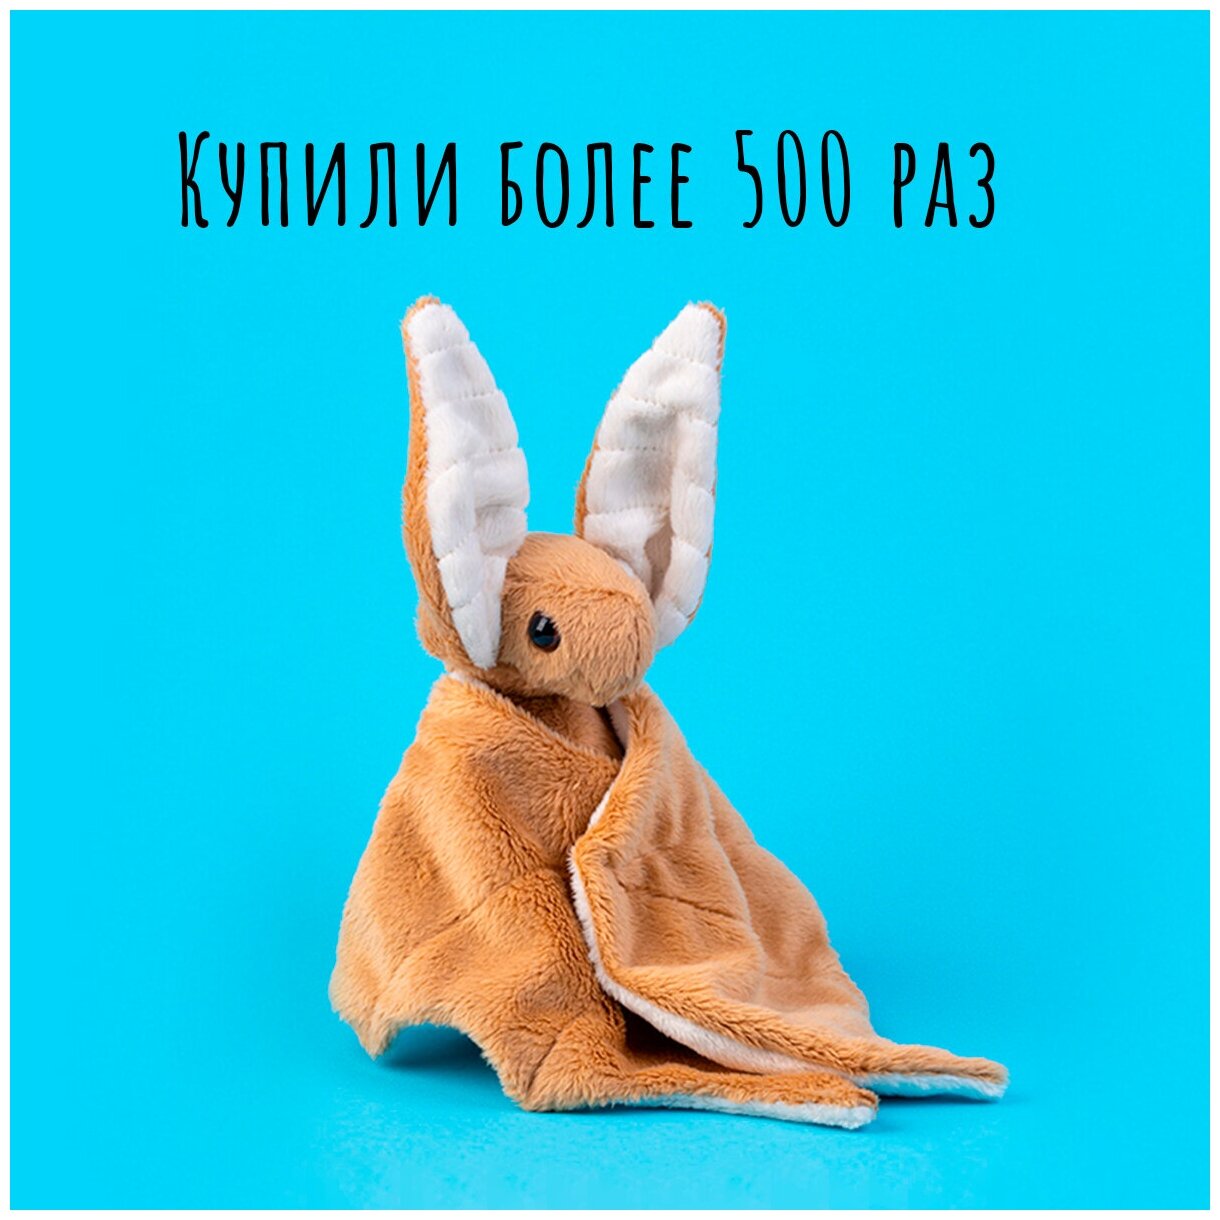 Мягкая игрушка летучая мышь BOOMTS цвет "Кофе с молоком" в подарок на 8 марта — купить в интернет-магазине по низкой цене на Яндекс Маркете